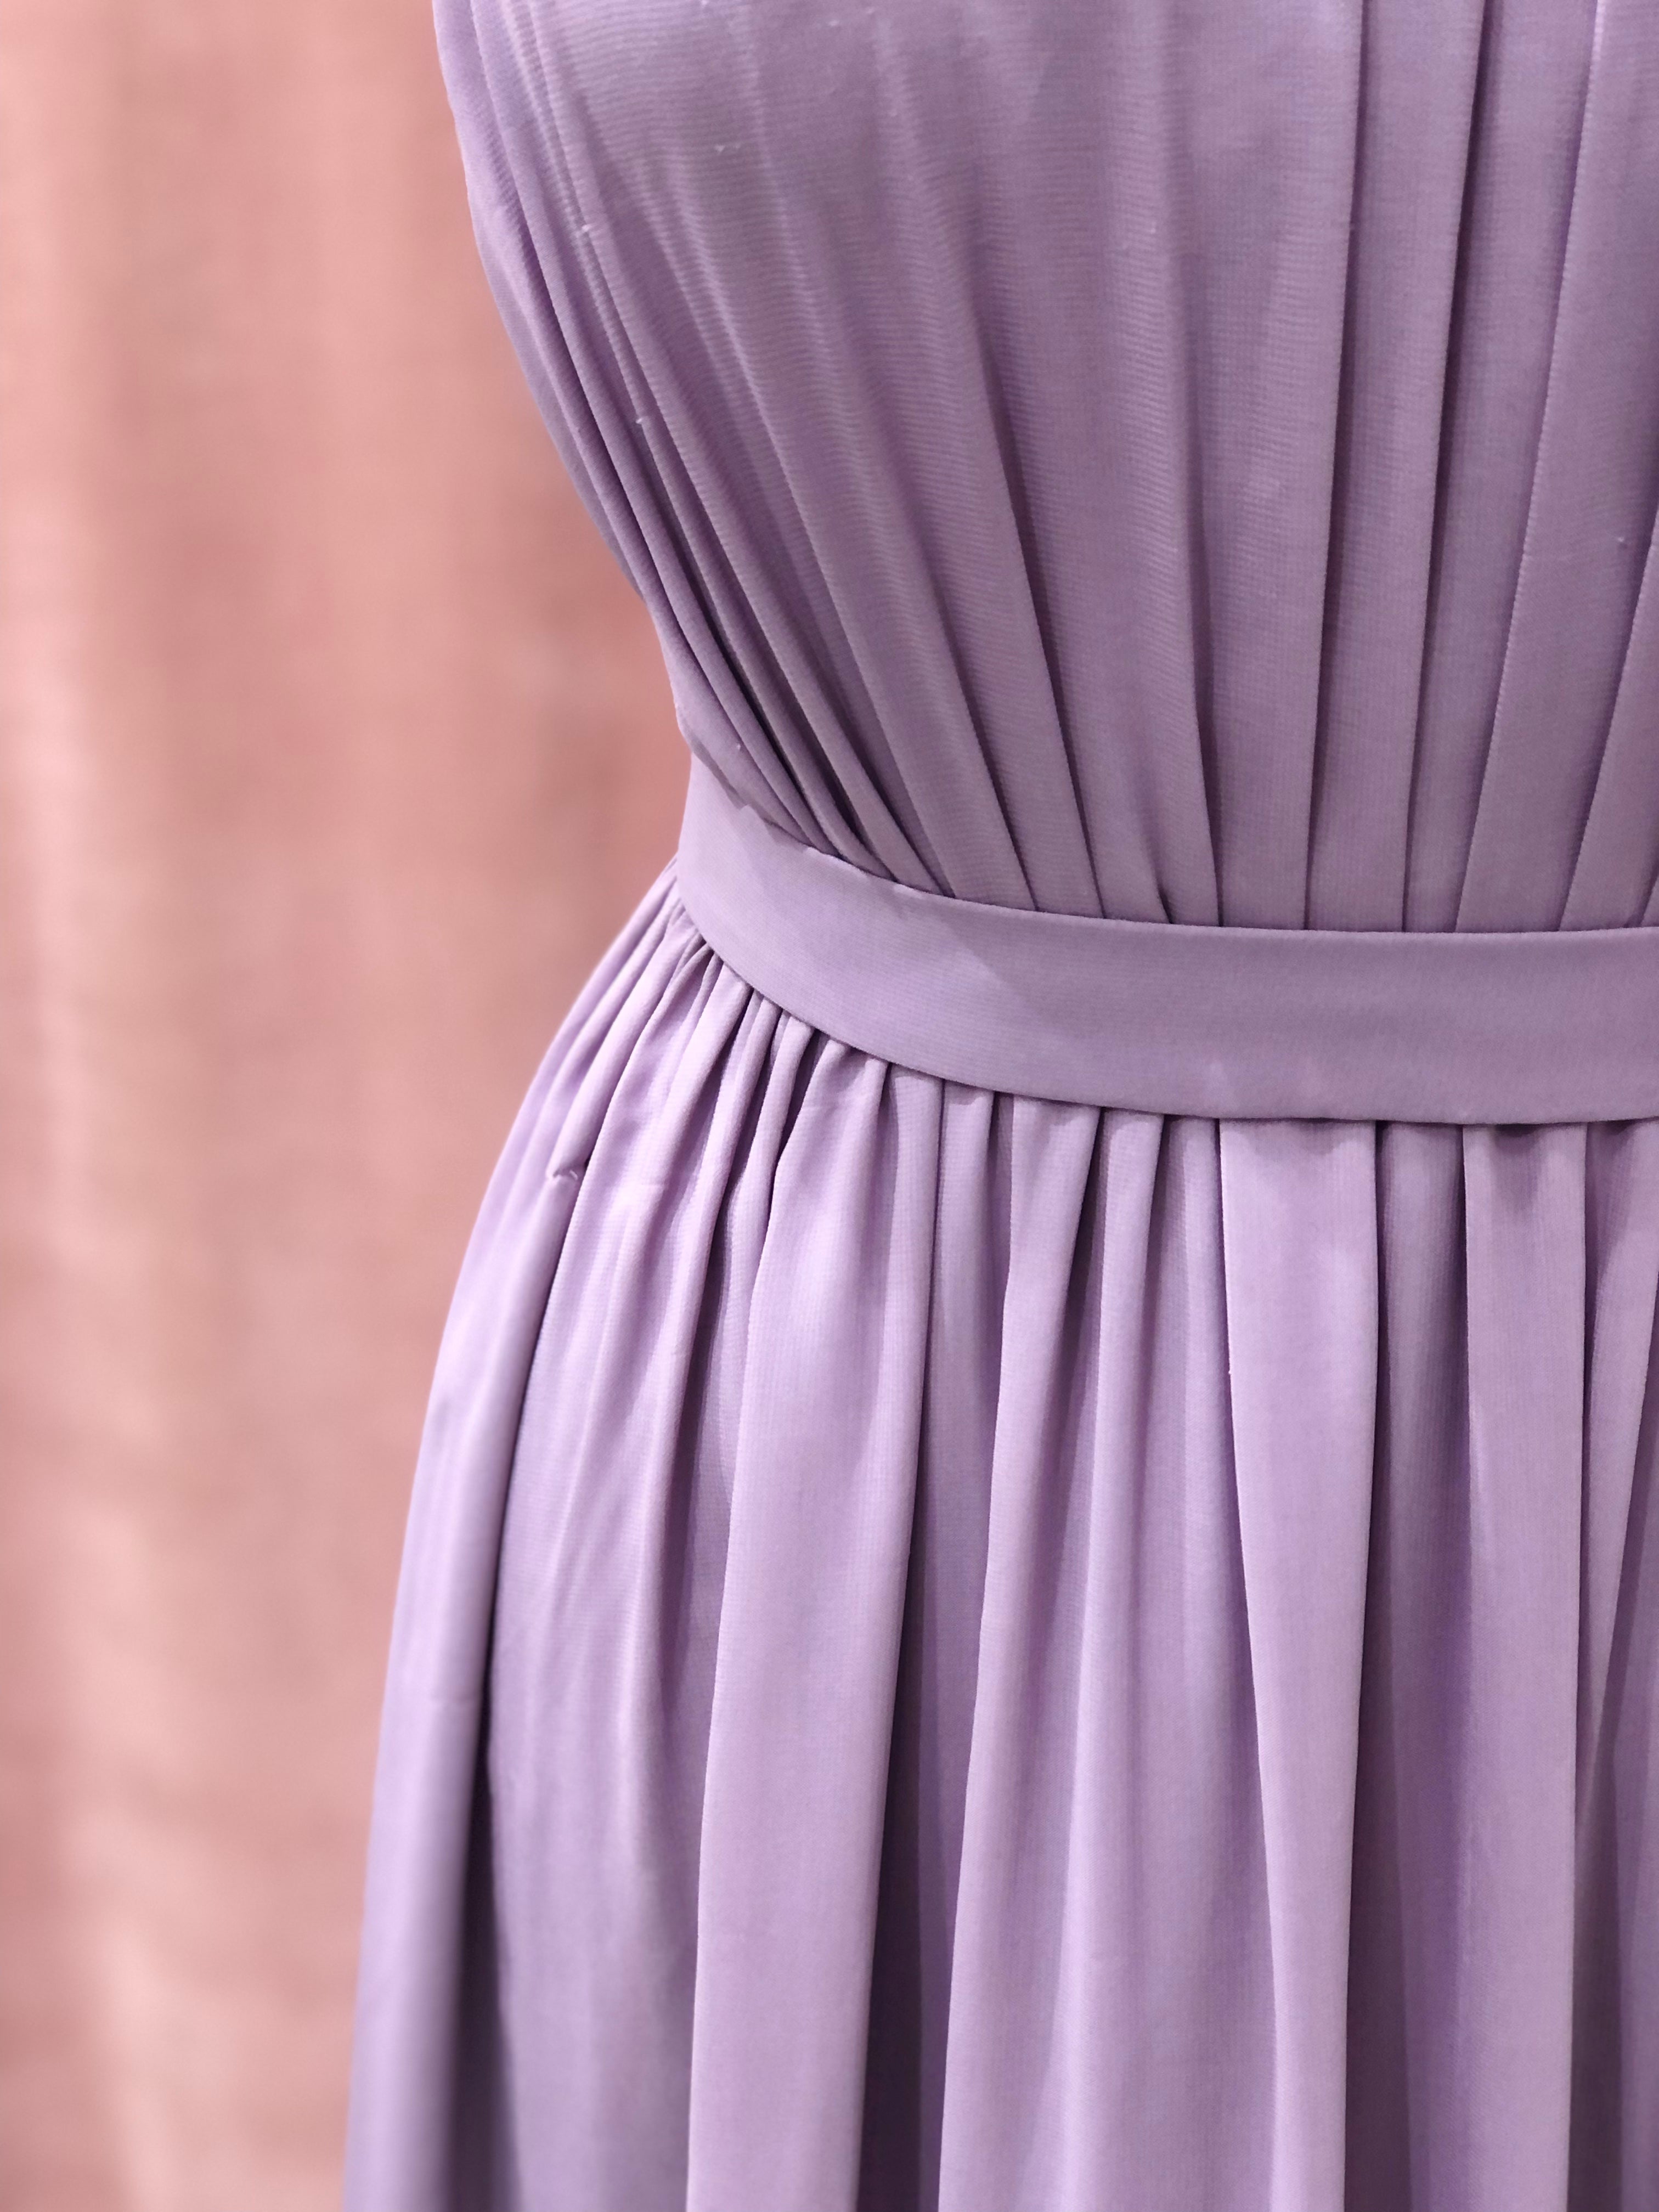 Lilac chiffon dress size 8